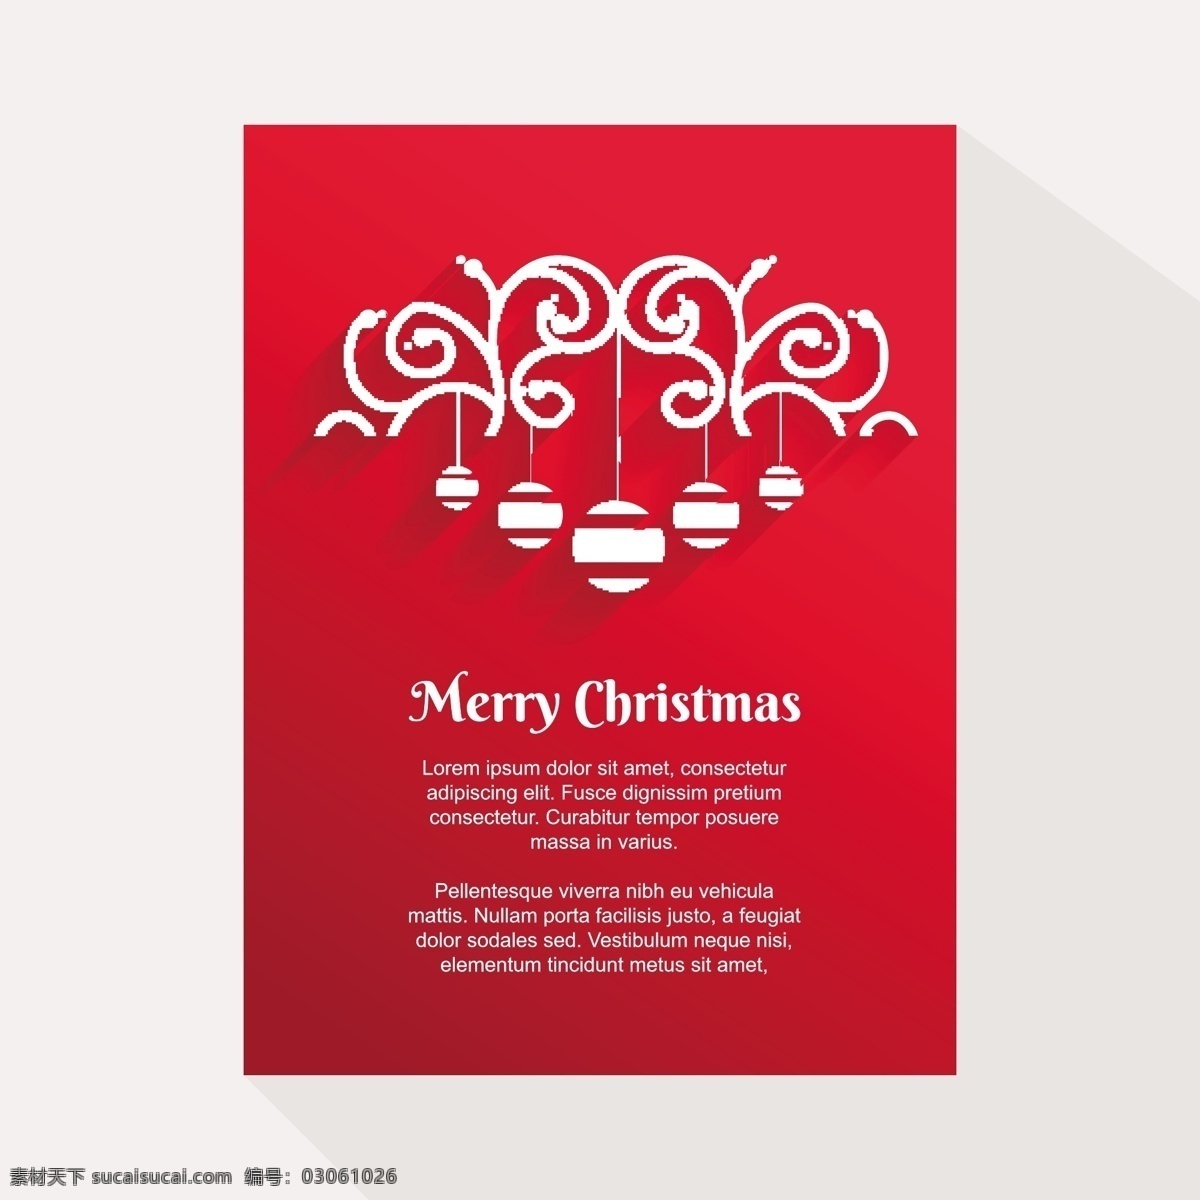 红色 装饰 圣诞卡 小 玩意 模板 圣诞快乐 冬天快乐 圣诞 庆祝 卡片 观赏 祝福 圣诞装饰品 圣诞饰品 白色